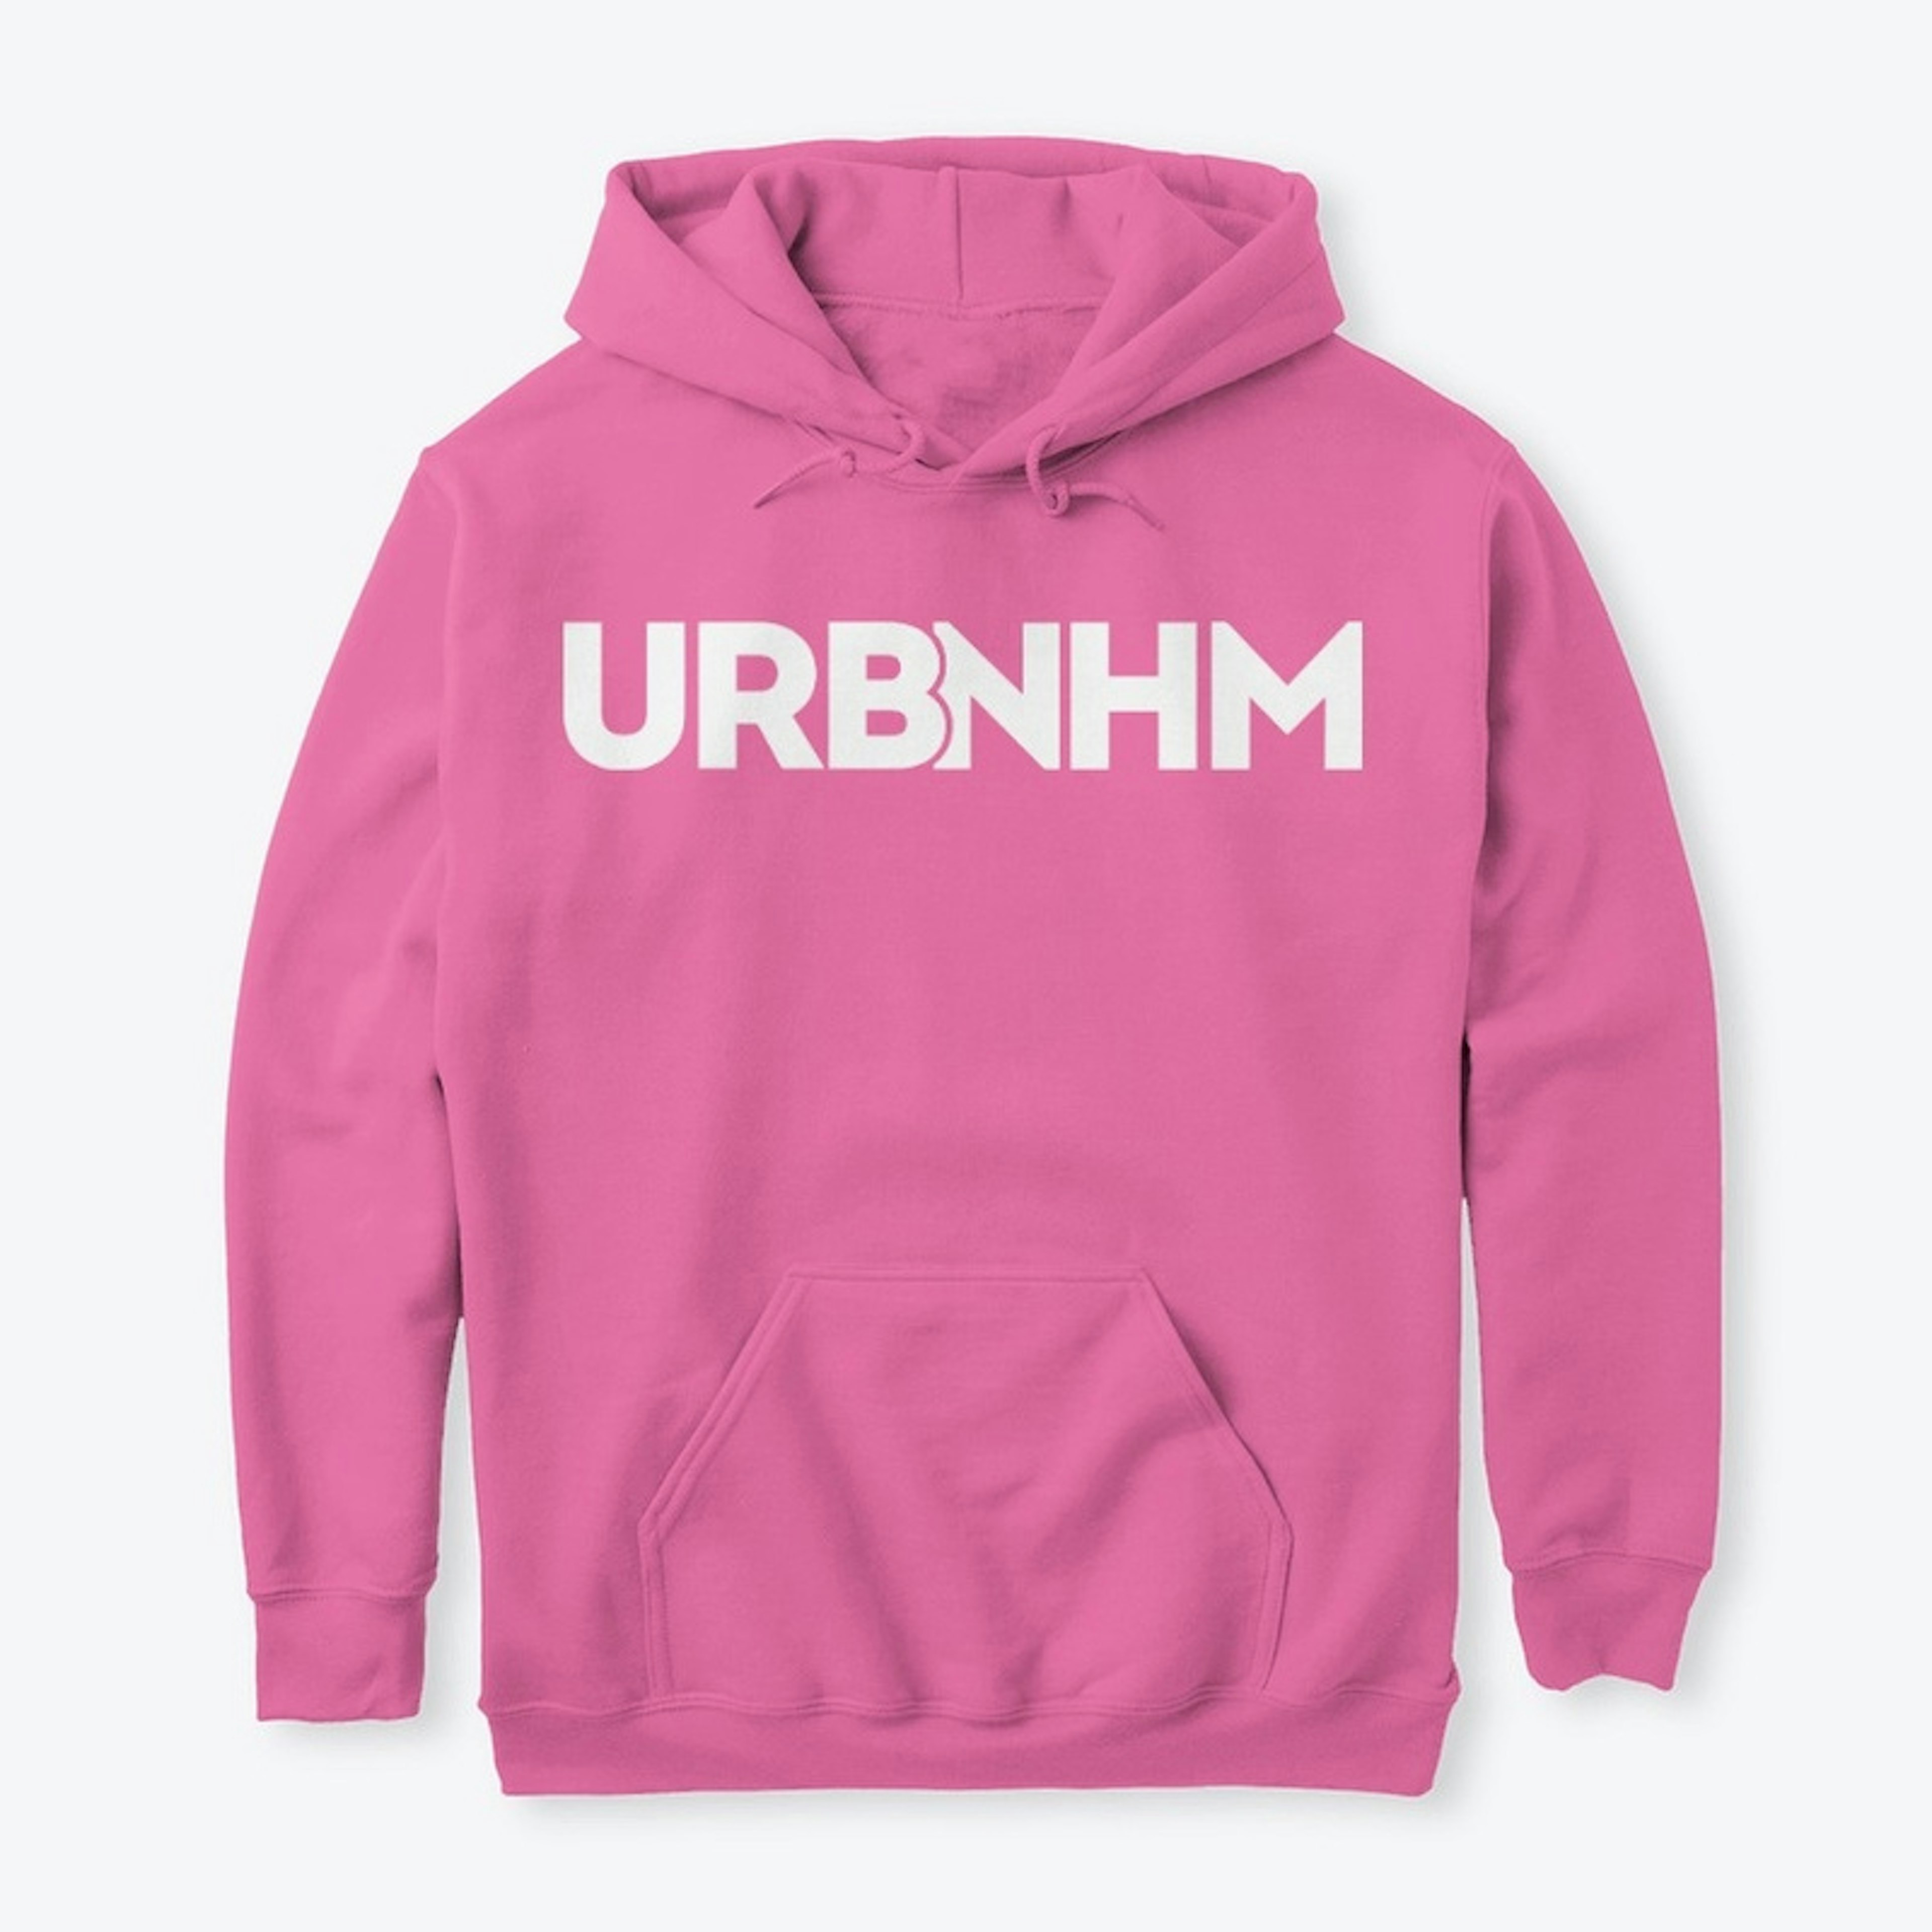 URBNHM Shades of Pink Hoodie